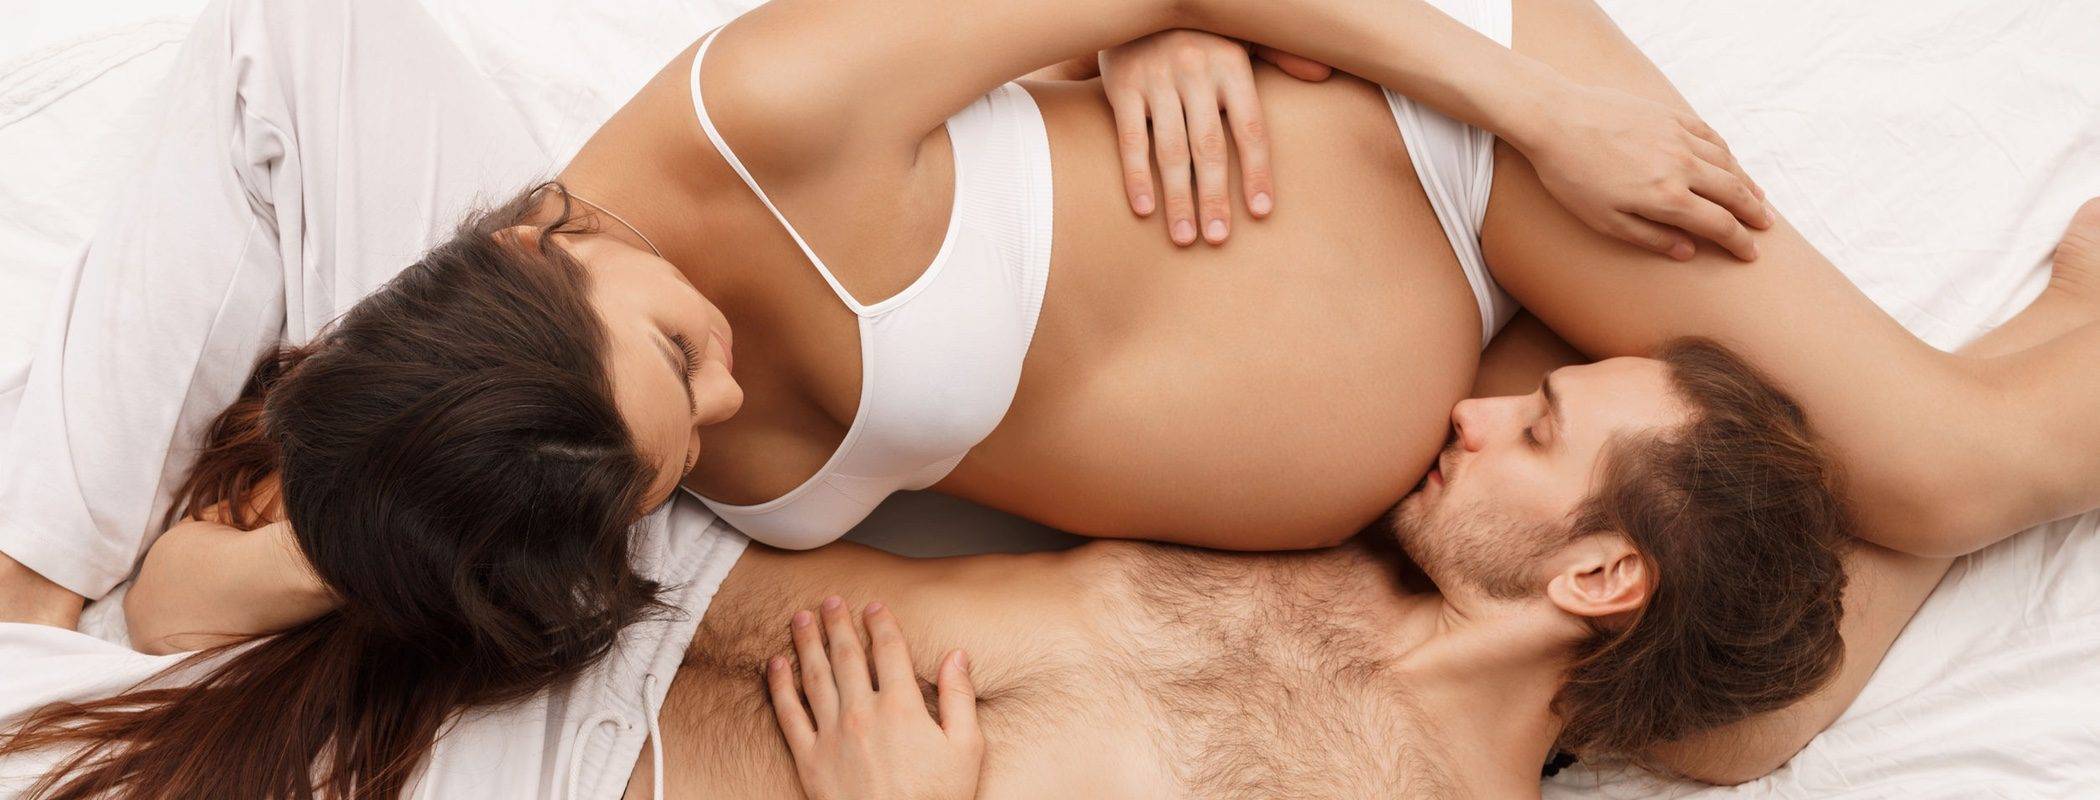 Секс во время беременности: табу на простые радости?